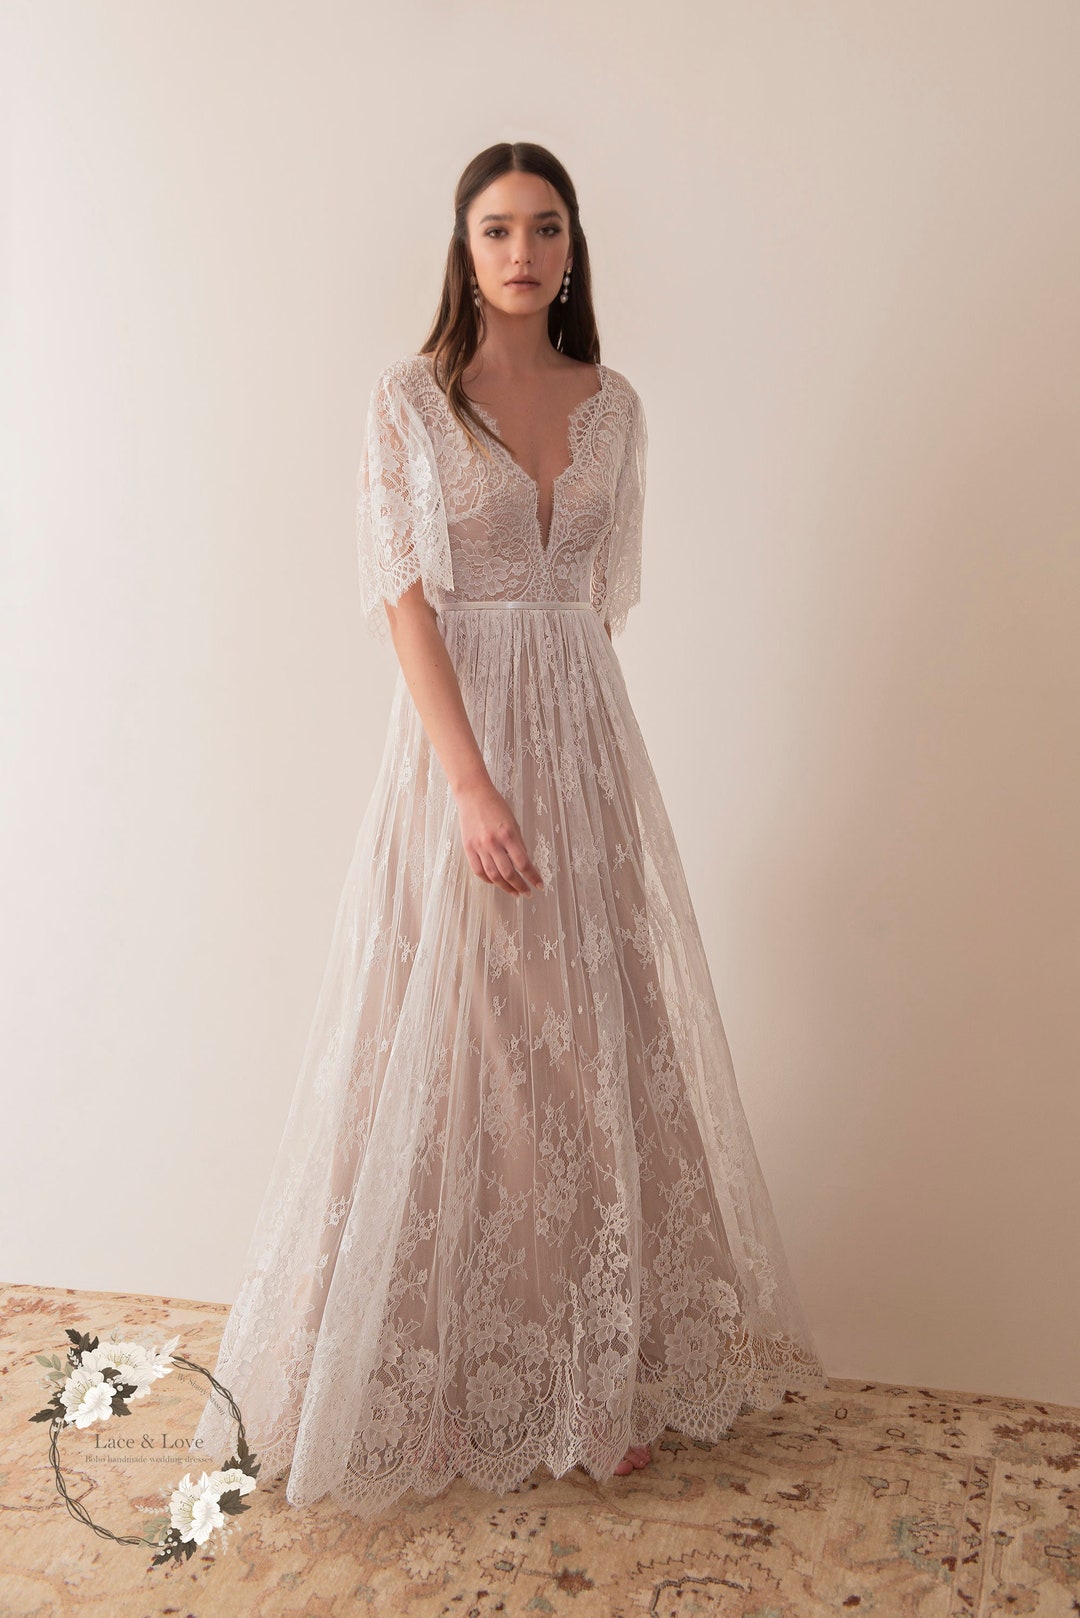 15 Beautiful Backless Wedding Dresses & Gowns  Rückenfreies  hochzeitskleid, Kleid hochzeit, Hochzeitskleid